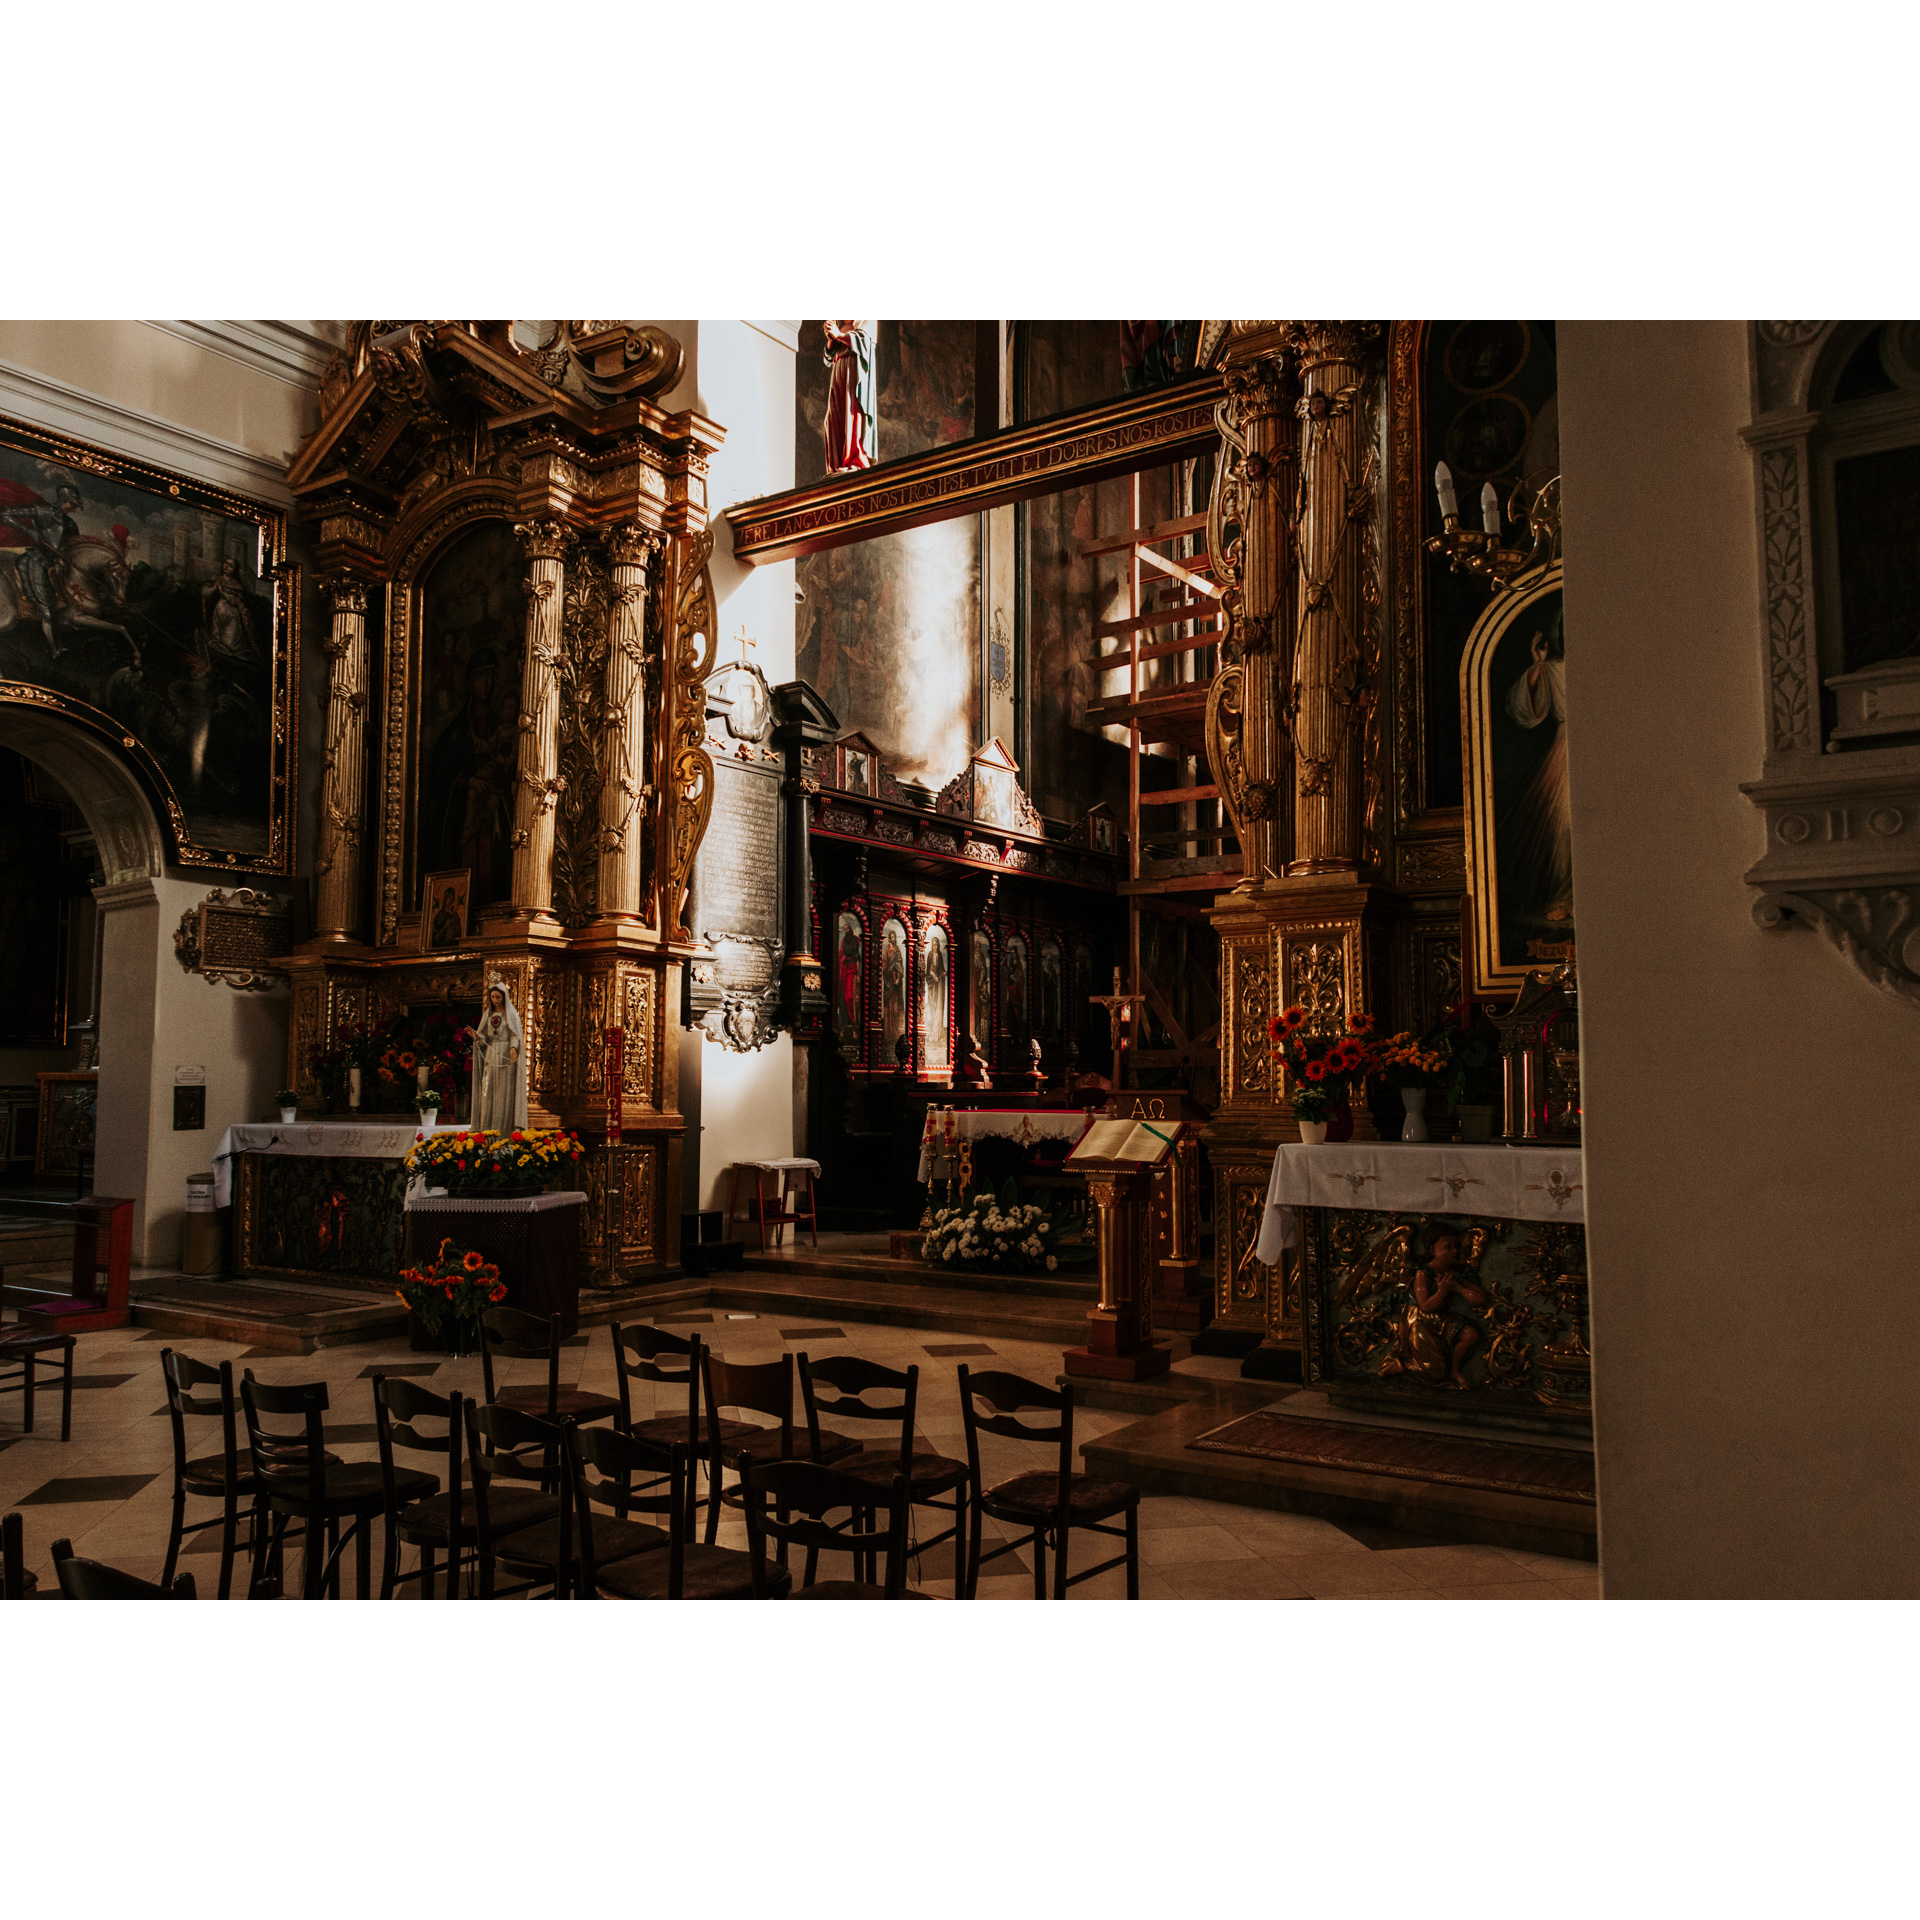 Ołtarz we wnętrzu kościoła ze złotymi i czerwonymi wykończeniami oraz świętymi obrazami